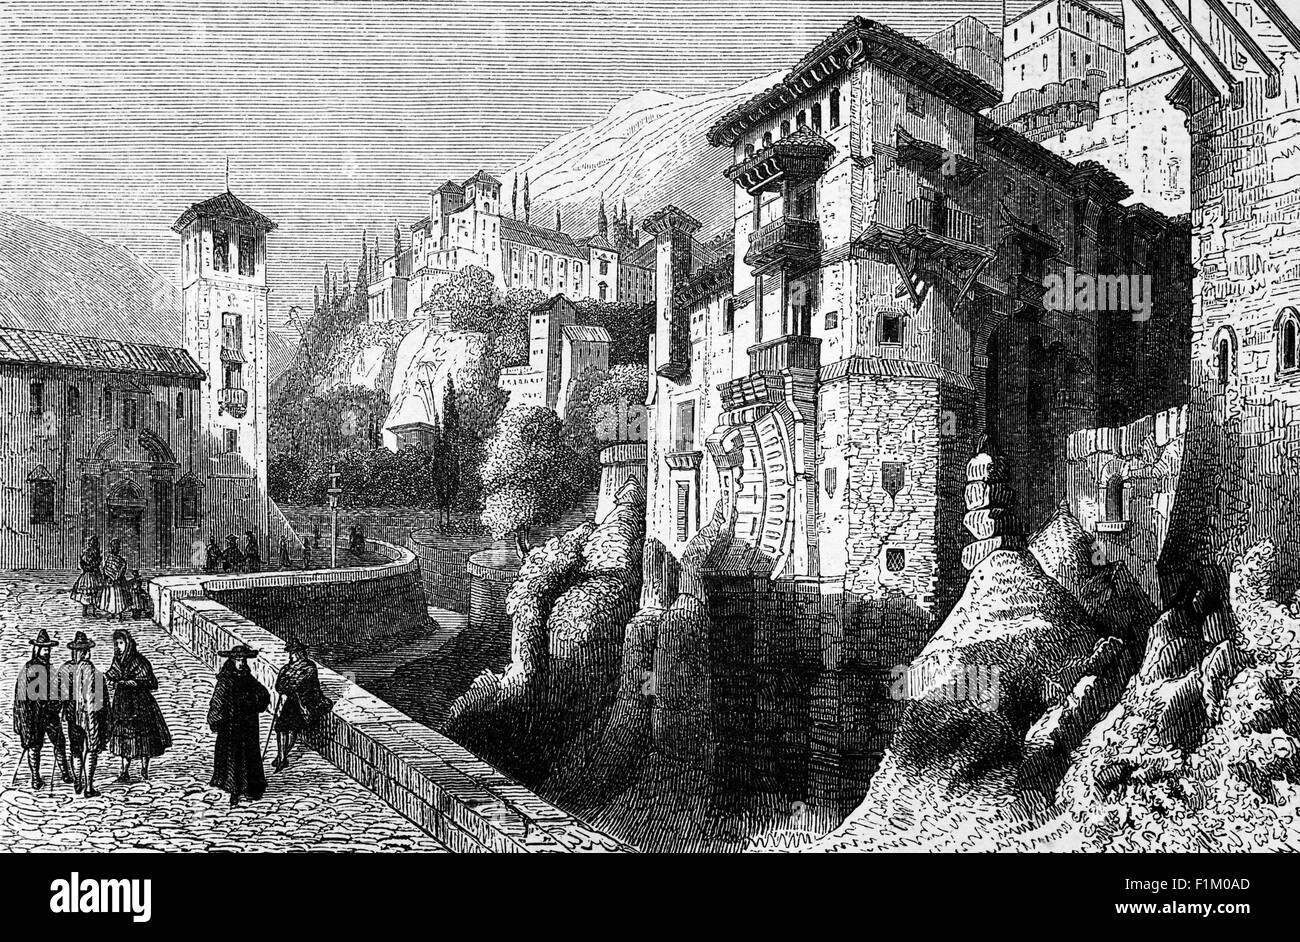 Une vue du XVIe siècle de Grenade au-dessous de l'Alhambra, la citadelle arabe et le palais. La capitale de la province de Grenade, en Andalousie, Espagne, Grenade est située au pied des montagnes de la Sierra Nevada, au confluent de quatre rivières, le Darro, le Genil, le Monachil et le Beiro. Banque D'Images